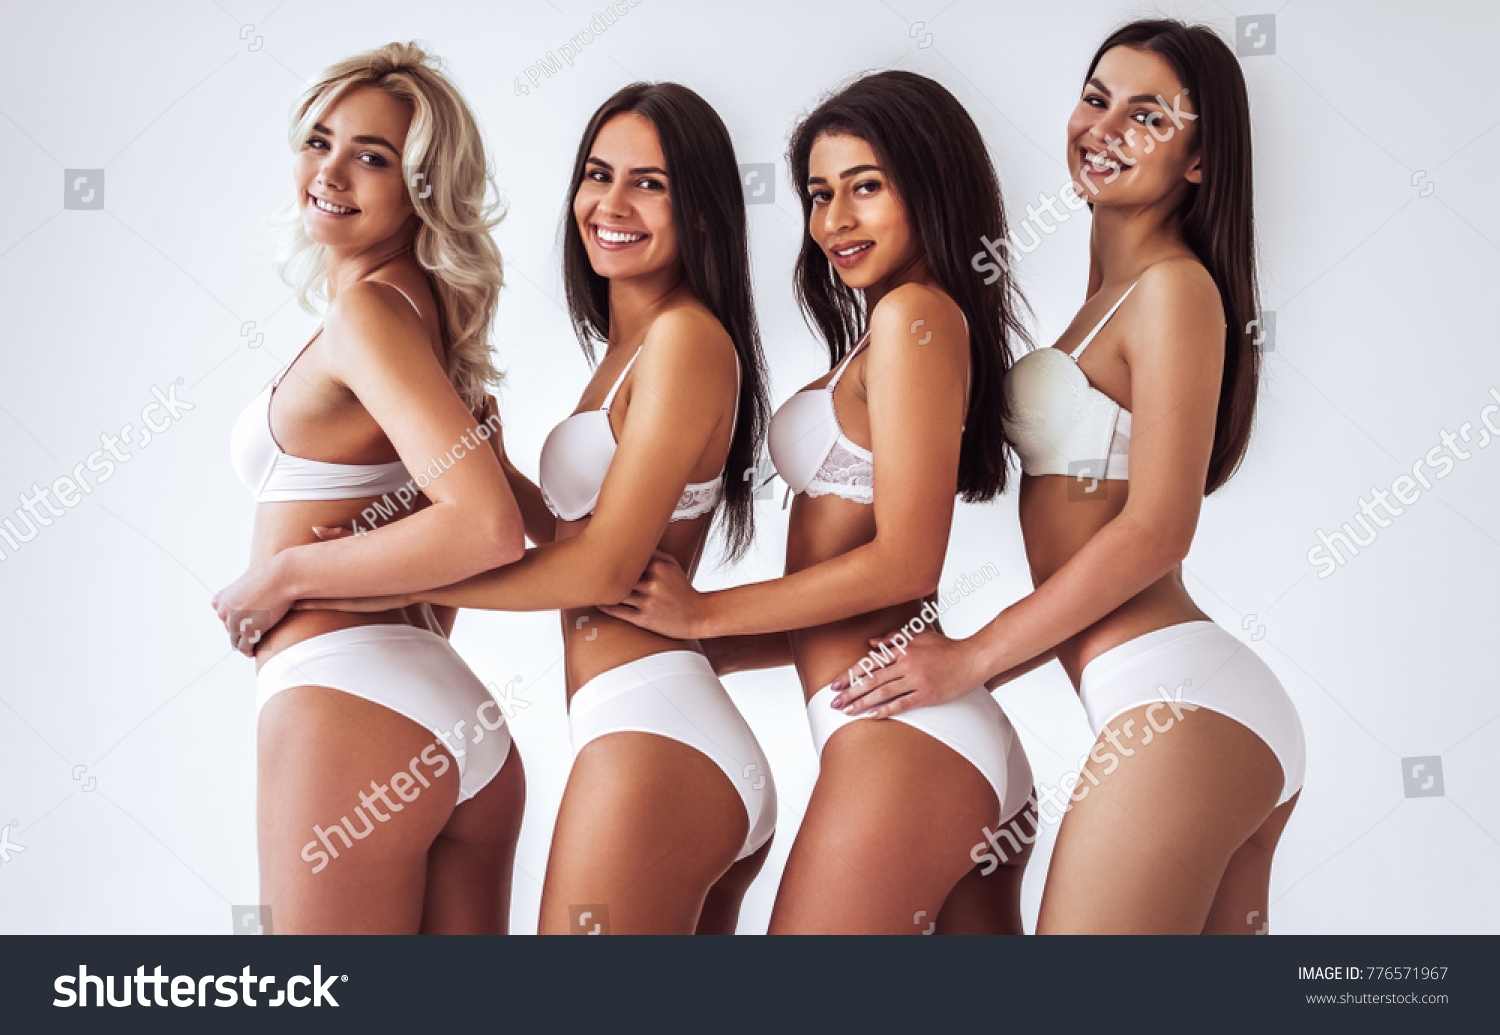 Group Of Girls In Panties